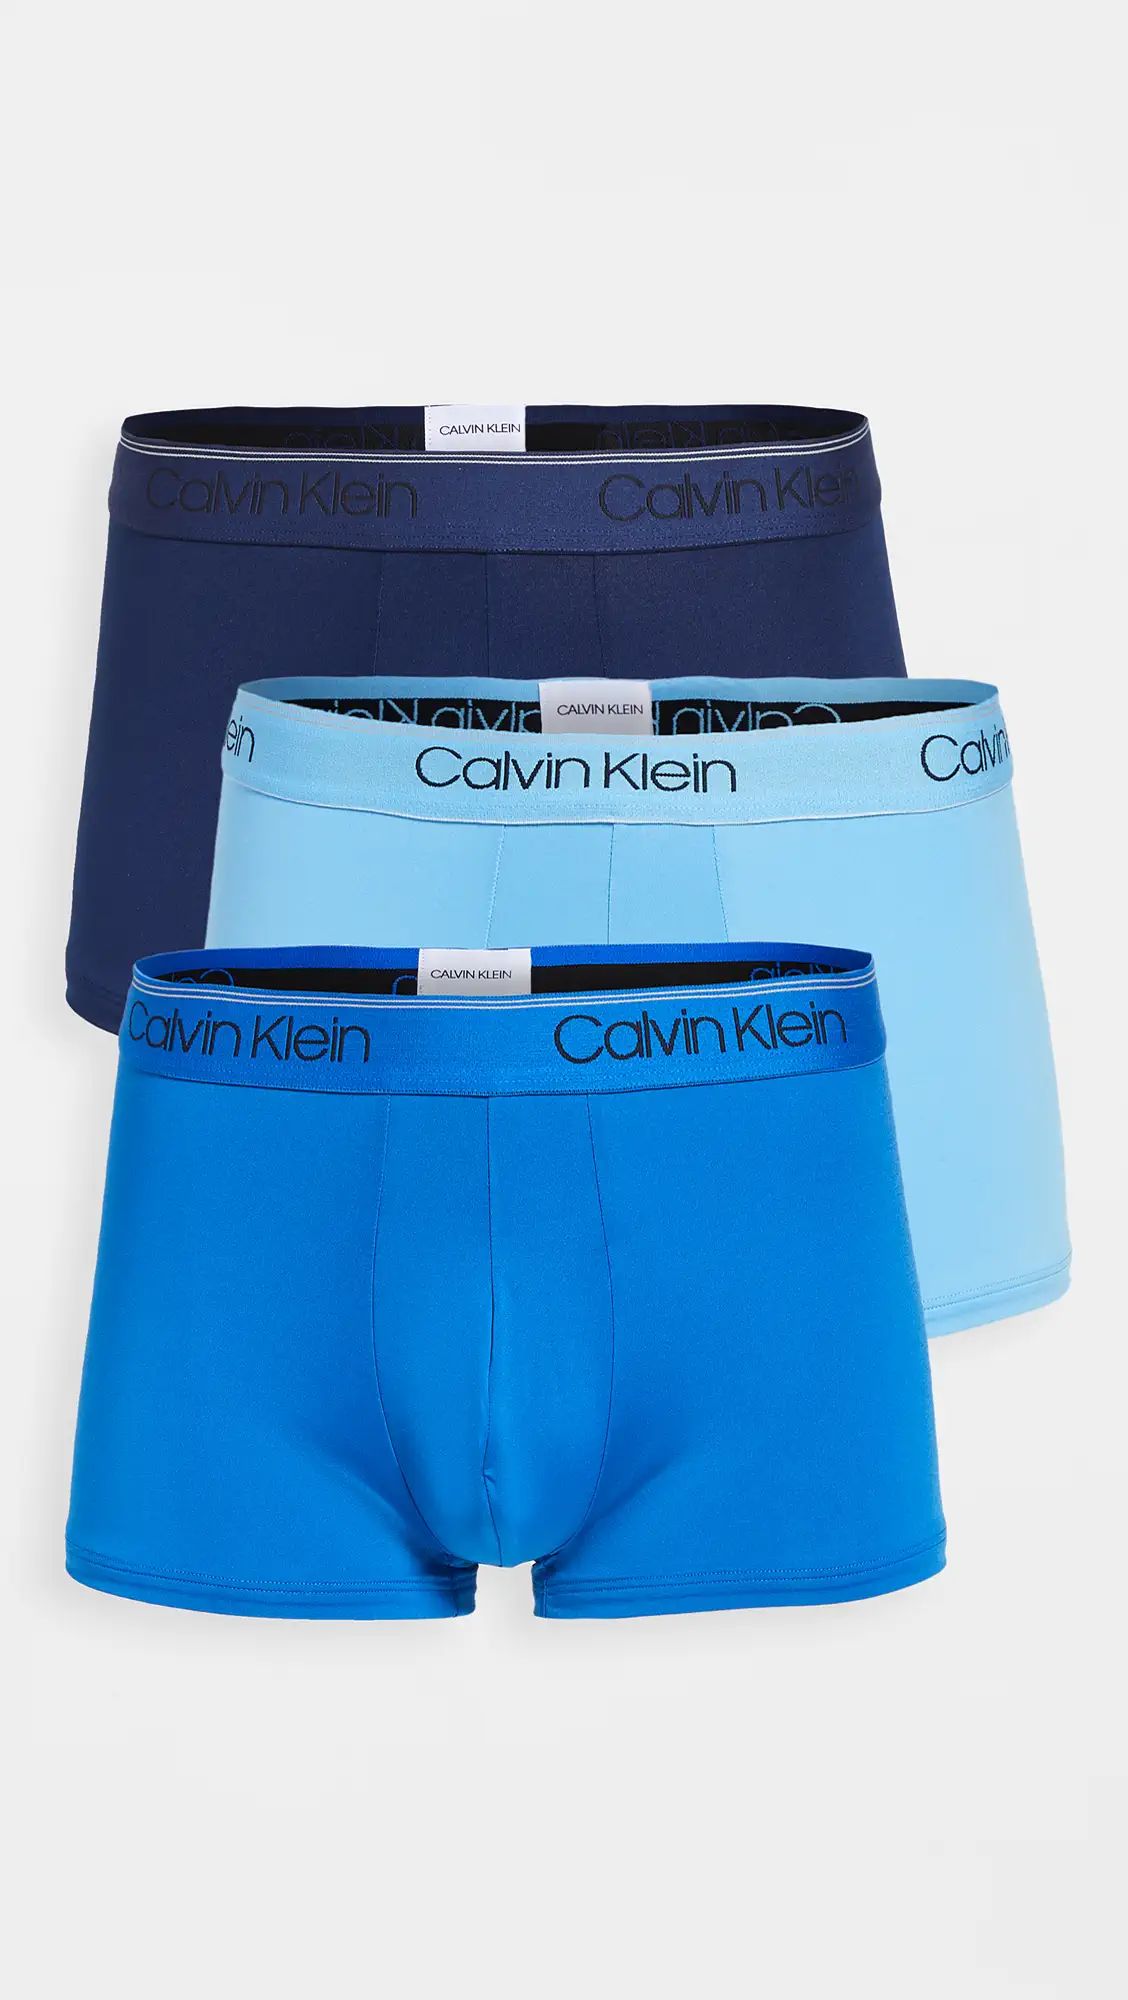 Calvin Klein Underwear | Shopbop